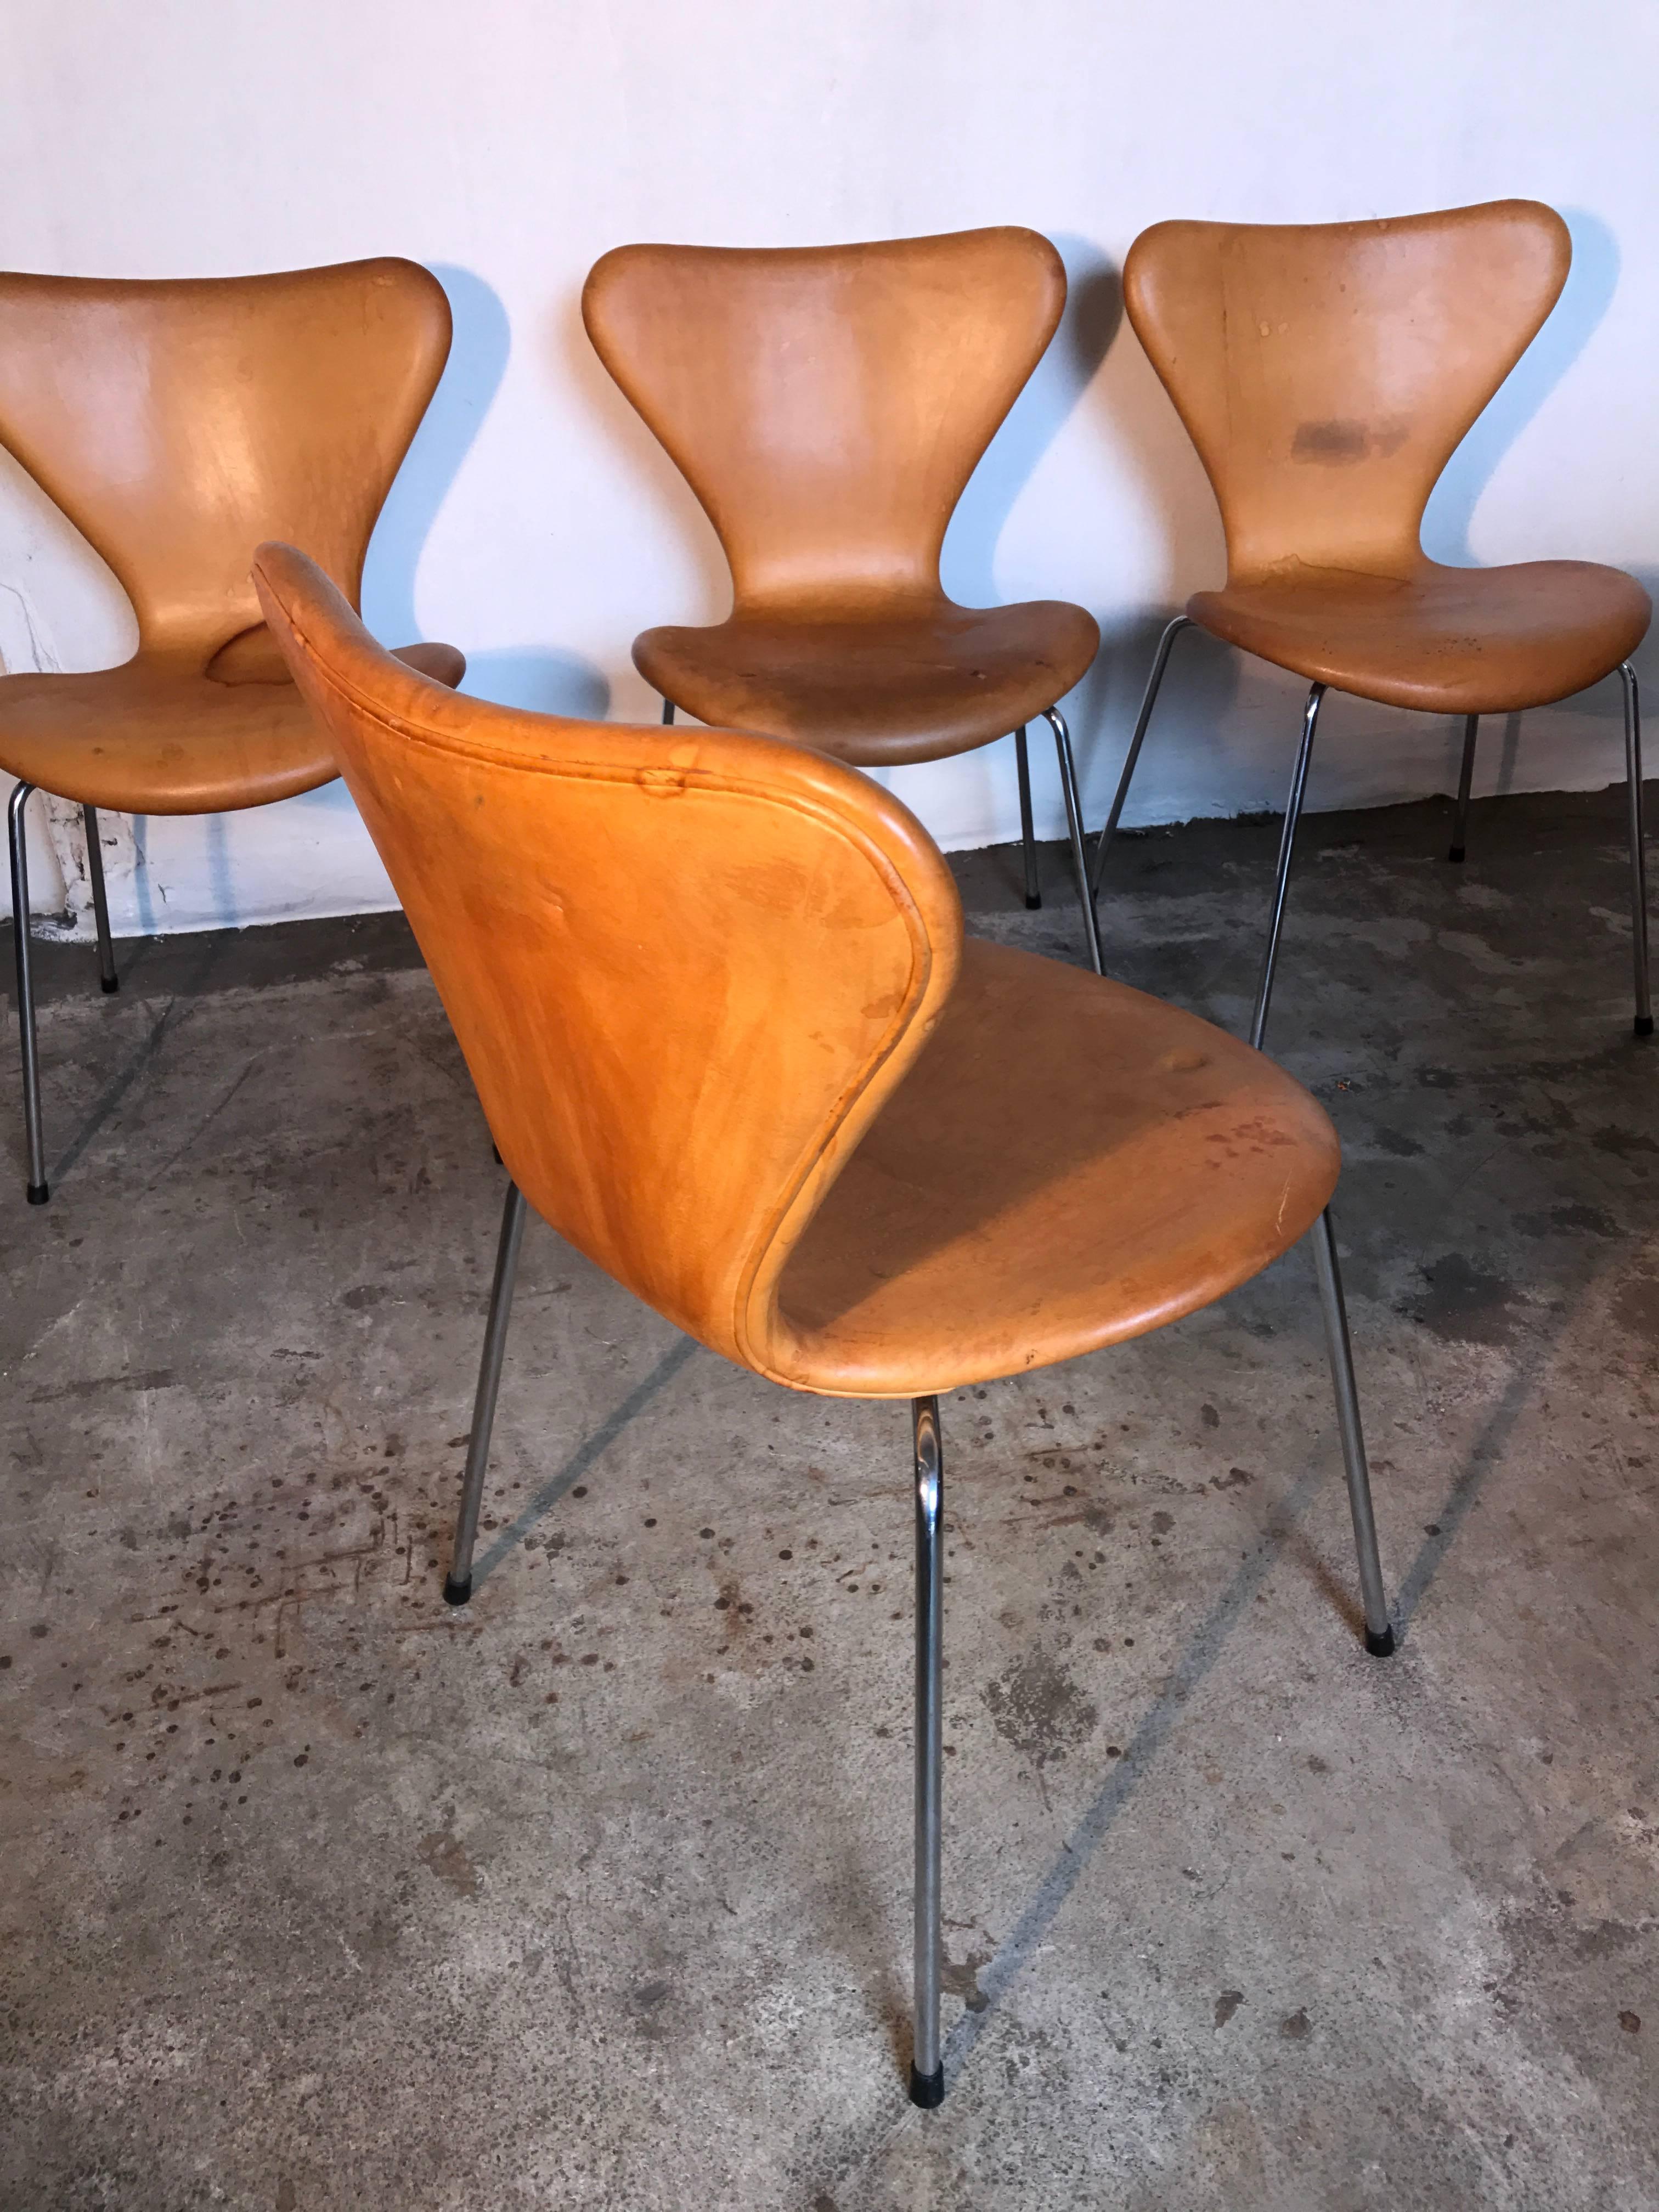 Magnifique ensemble de six chaises au design classique, les chaises Butterfly du designer Arne Jacobsen.
Produit au Danemark par Fritz Hansen dans les années 1950.
Cet ensemble de six pièces est particulièrement intéressant en raison de la rareté